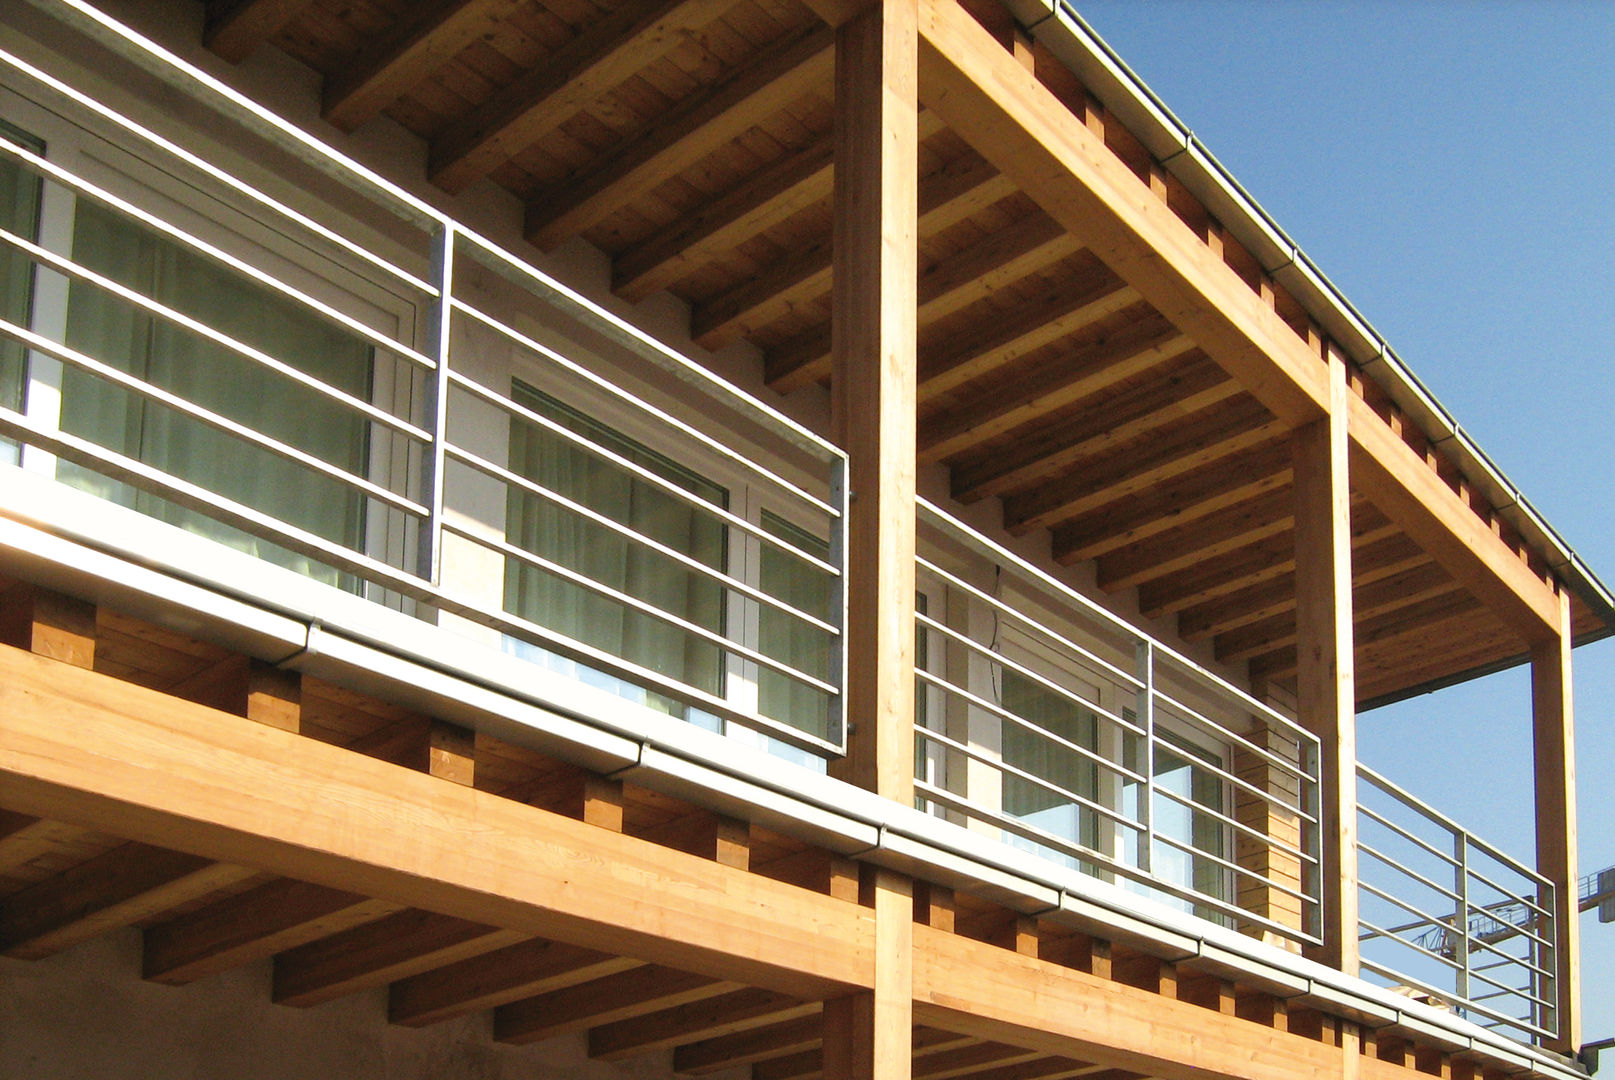 Casa in legno - Caravaggio (BG) Marlegno Casa di legno Legno Effetto legno case in legno,marlegno,villa in legno,villa,balcone